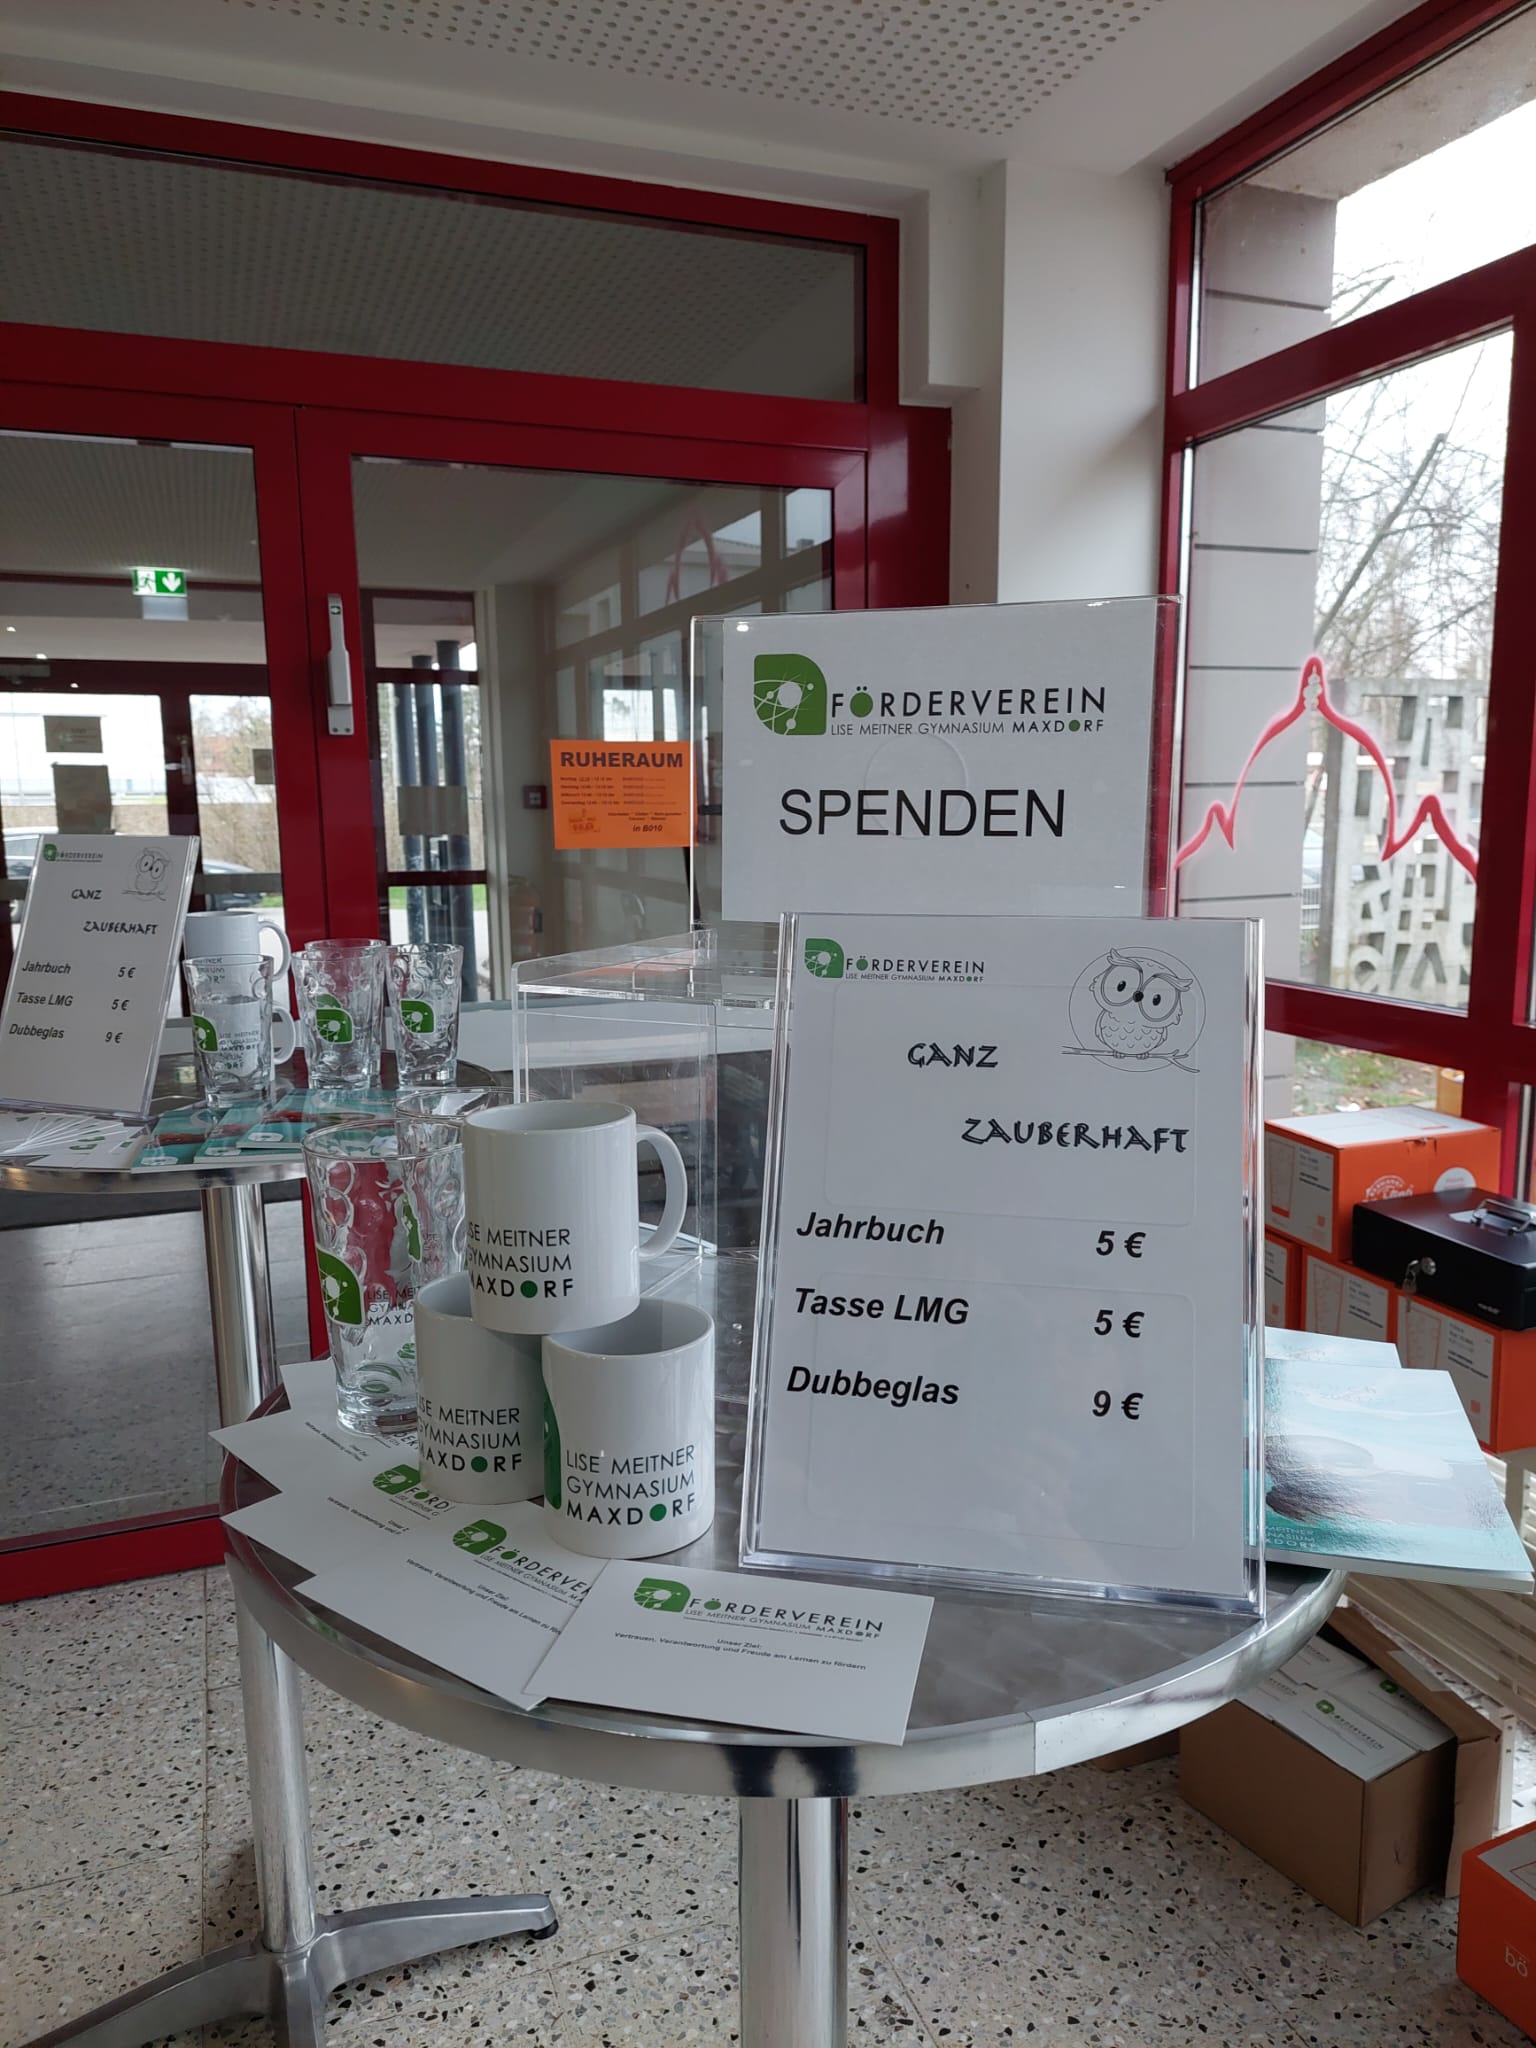 Spendentisch des Fördervereins am Leseabend.